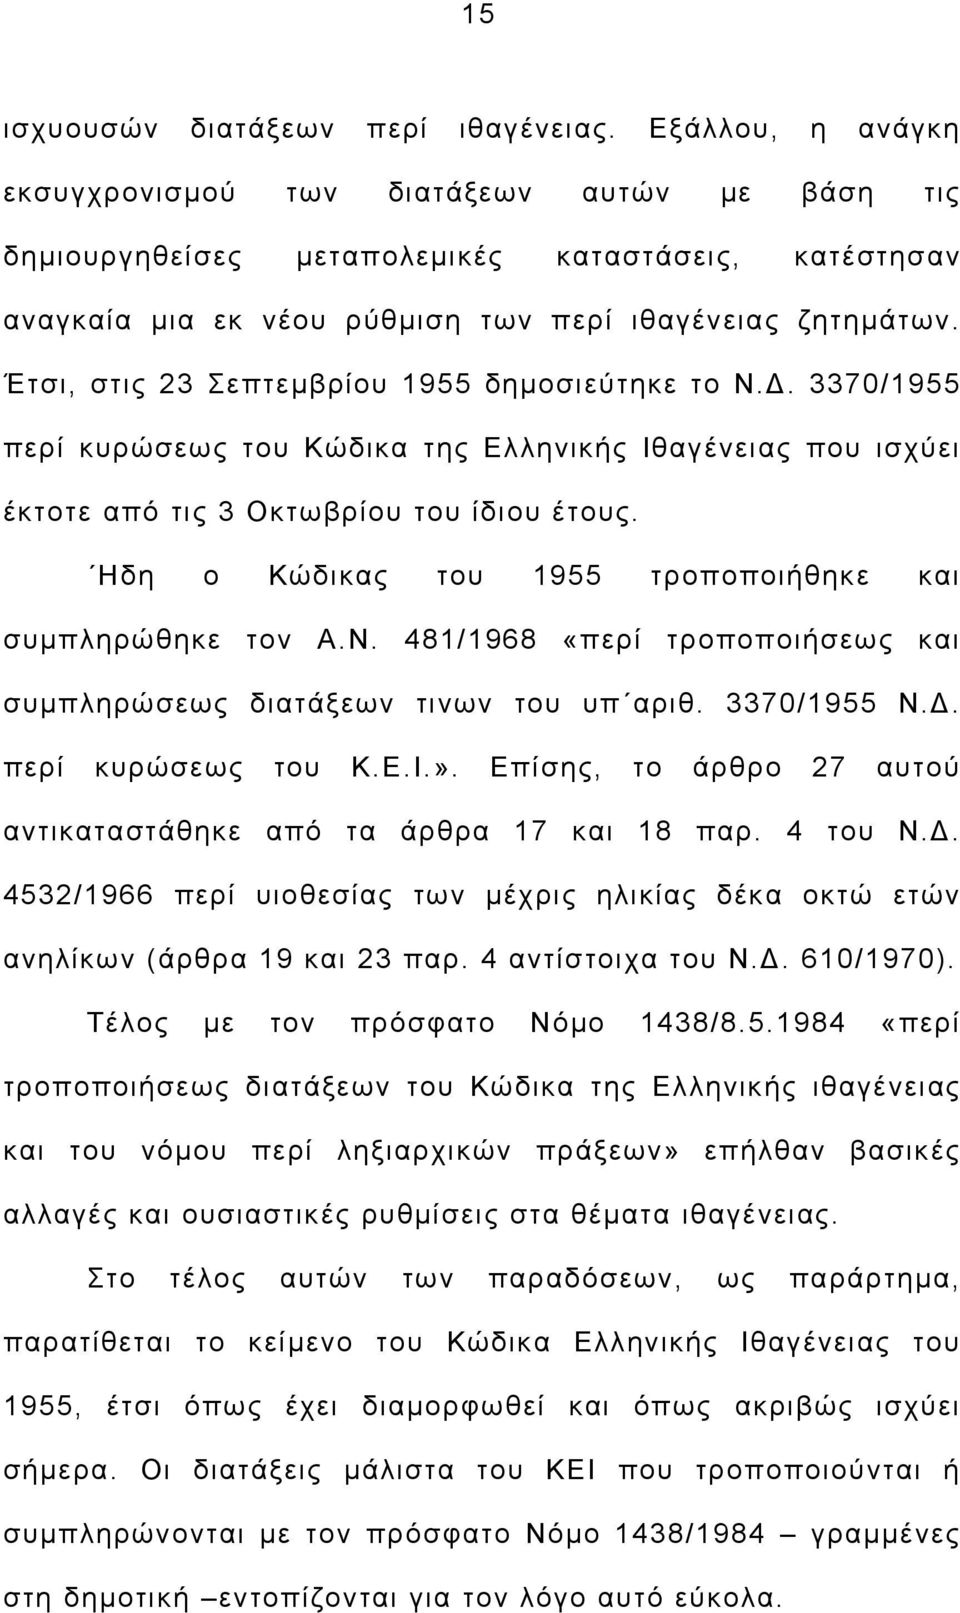 Έτσι, στις 23 Σεπτεμβρίου 1955 δημοσιεύτηκε το Ν.Δ. 3370/1955 περί κυρώσεως του Κώδικα της Ελληνικής Ιθαγένειας που ισχύει έκτοτε από τις 3 Οκτωβρίου του ίδιου έτους.